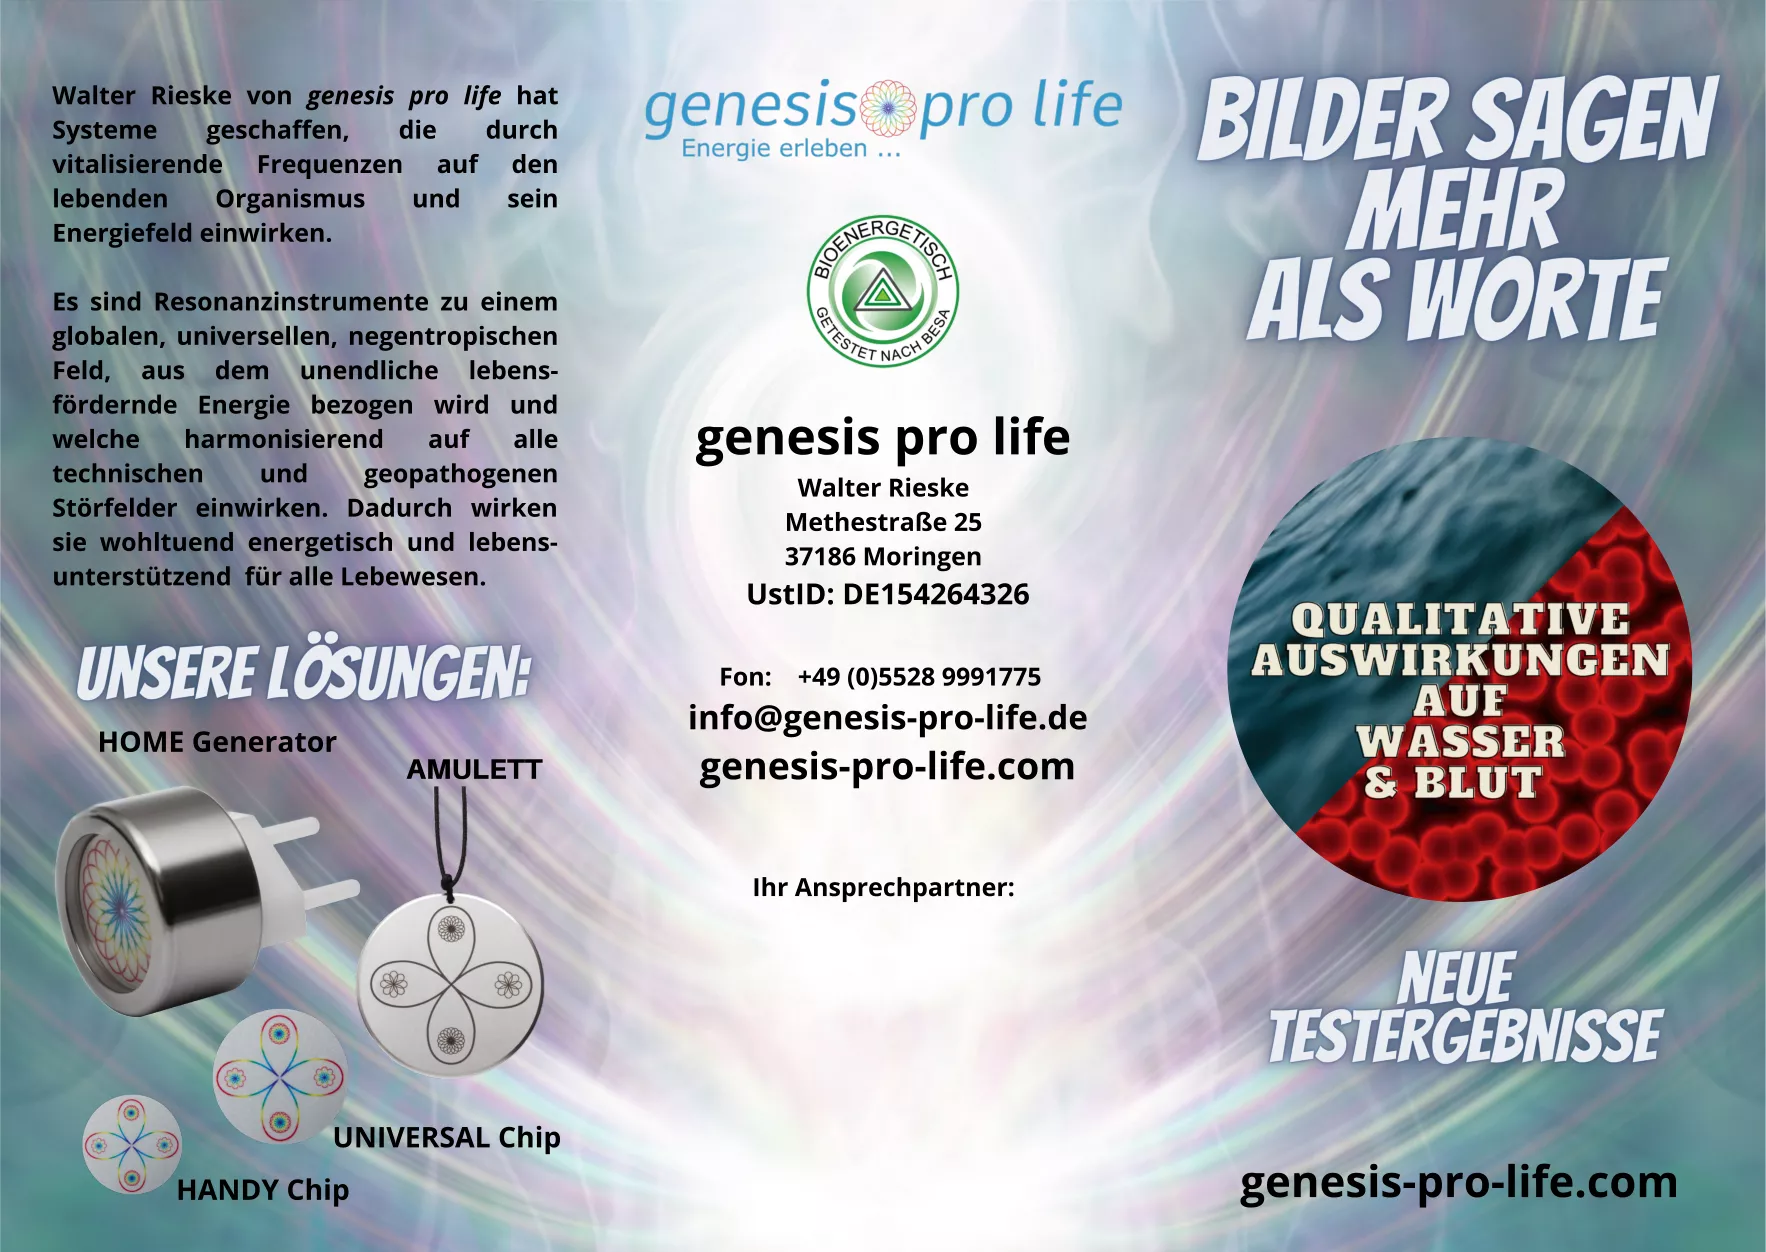 genesis pro life Bilder sagen mehr als Worte Flyer (10er Pack)